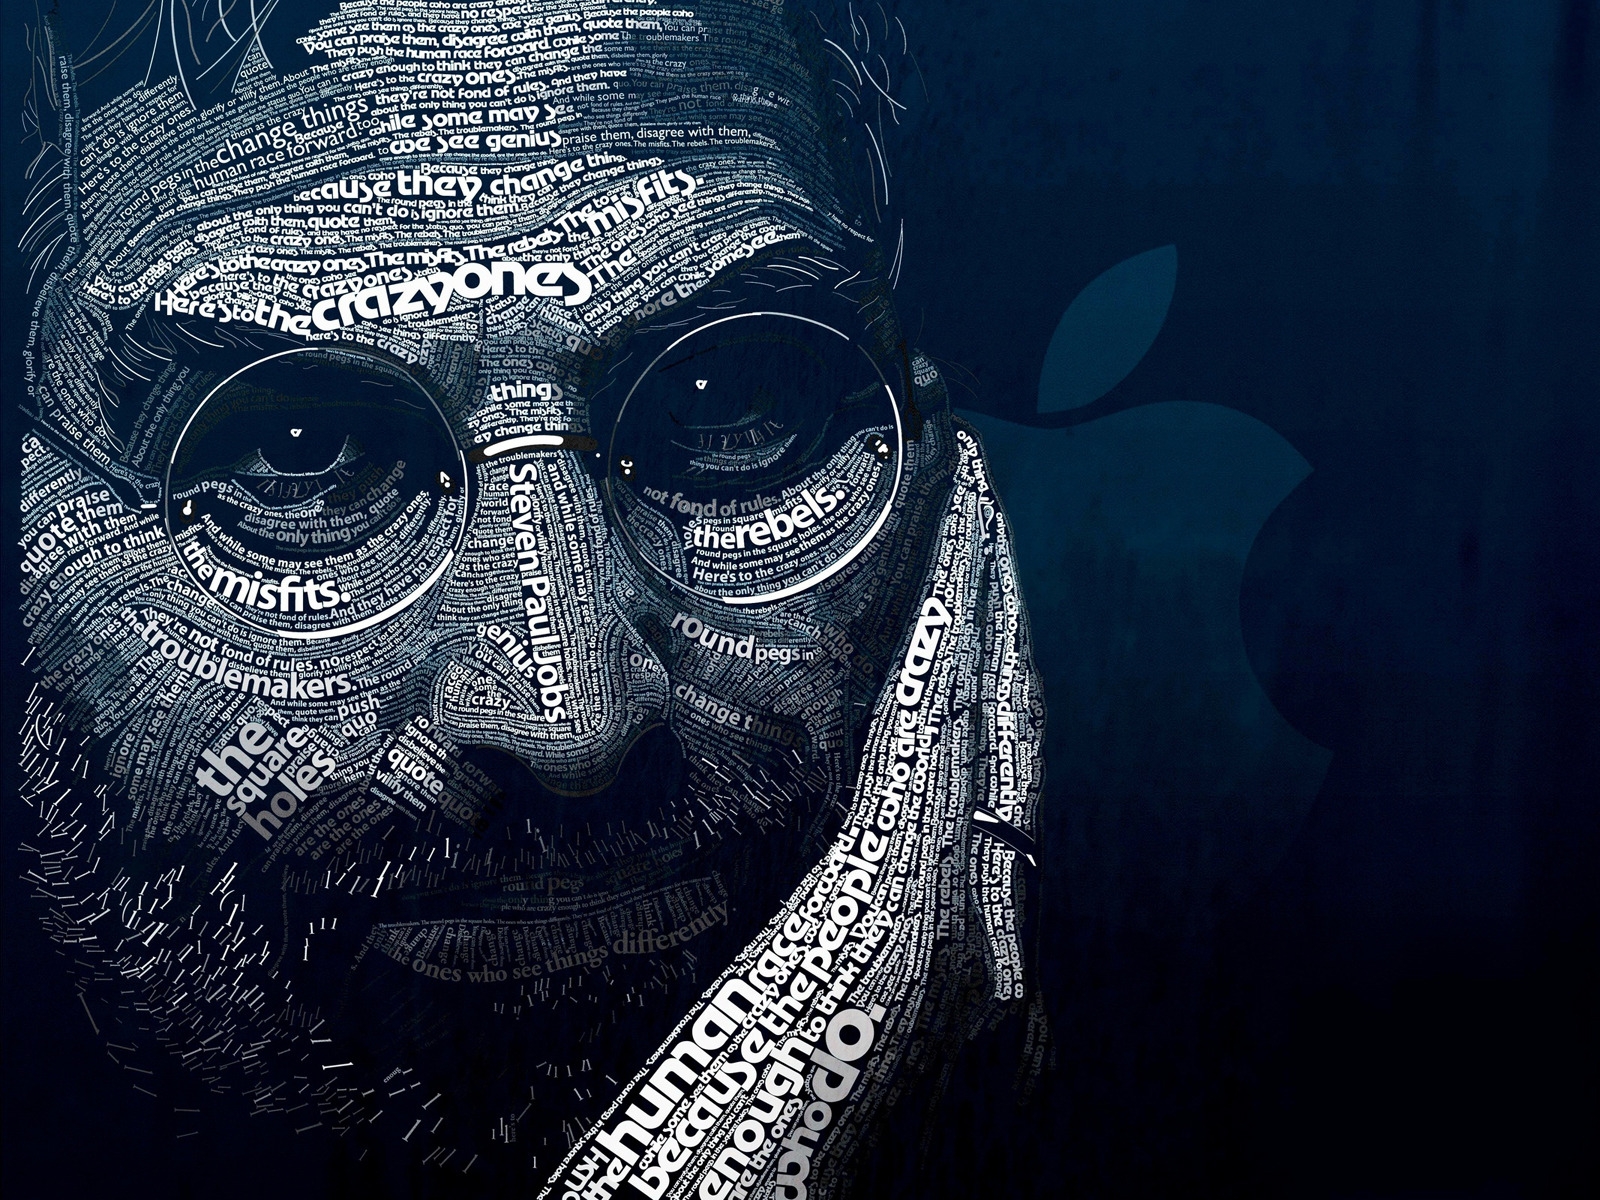 Steve Jobs Word Art for 1600 x 1200 resolution